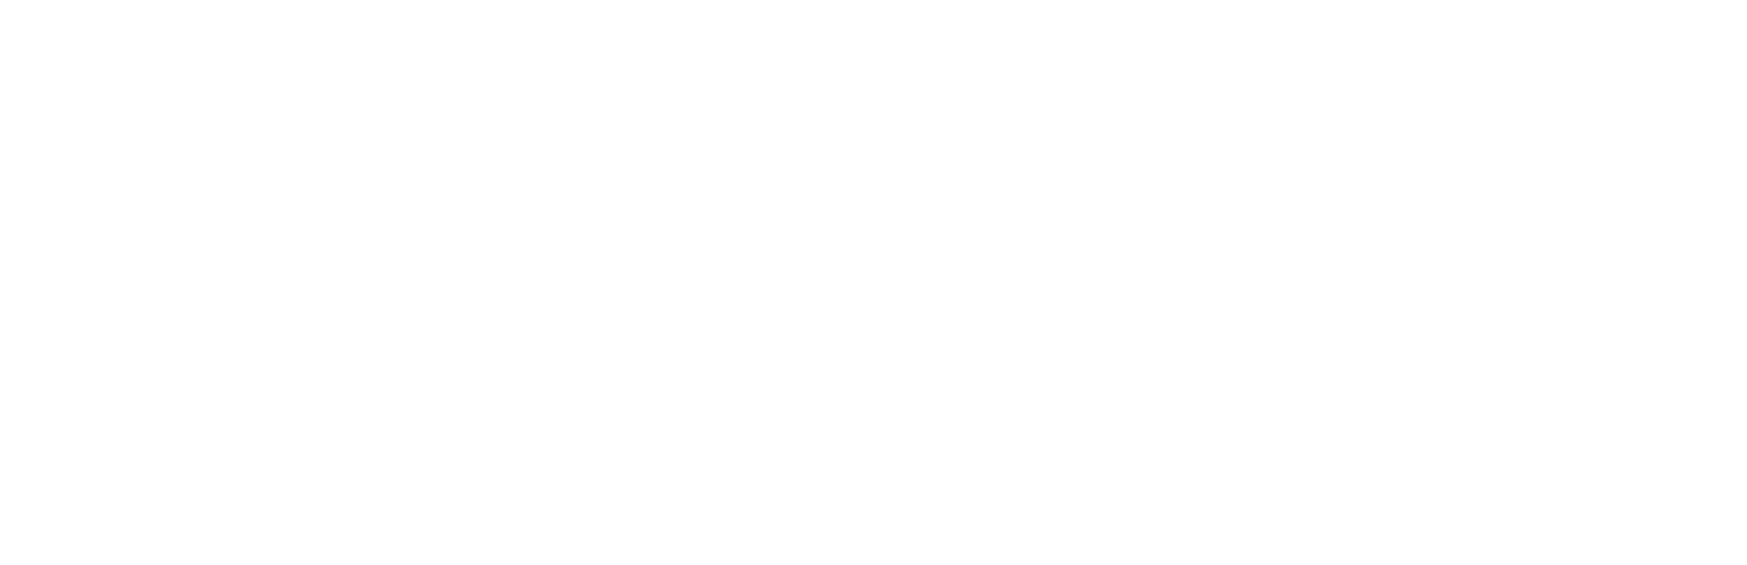 Coaltrans Conferences